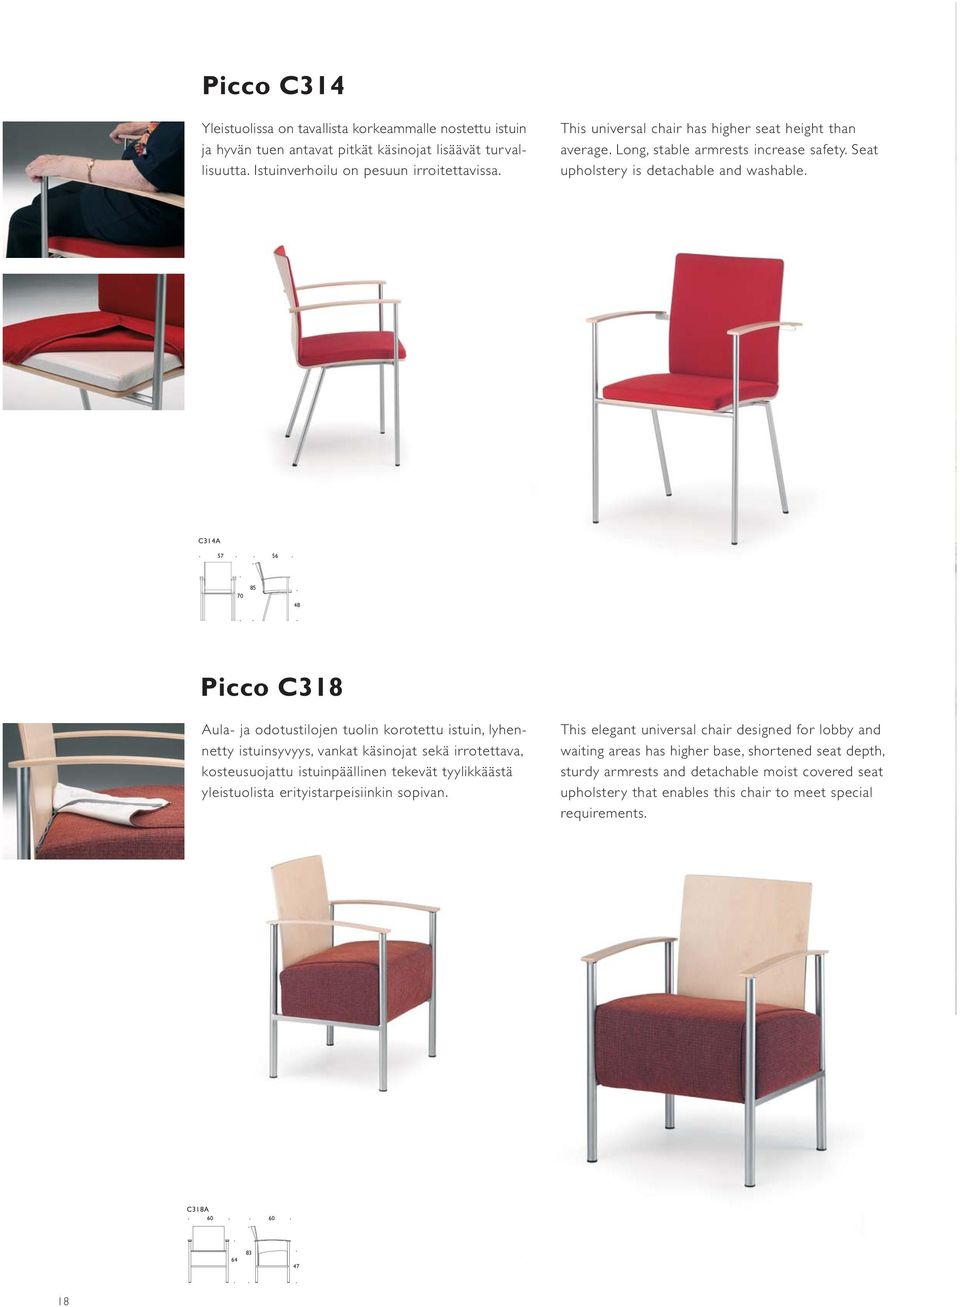 C314A 57 56 70 85 48 Picco C318 Aula- ja odotustilojen tuolin korotettu istuin, lyhennetty istuinsyvyys, vankat käsinojat sekä irrotettava, kosteusuojattu istuinpäällinen tekevät tyylikkäästä